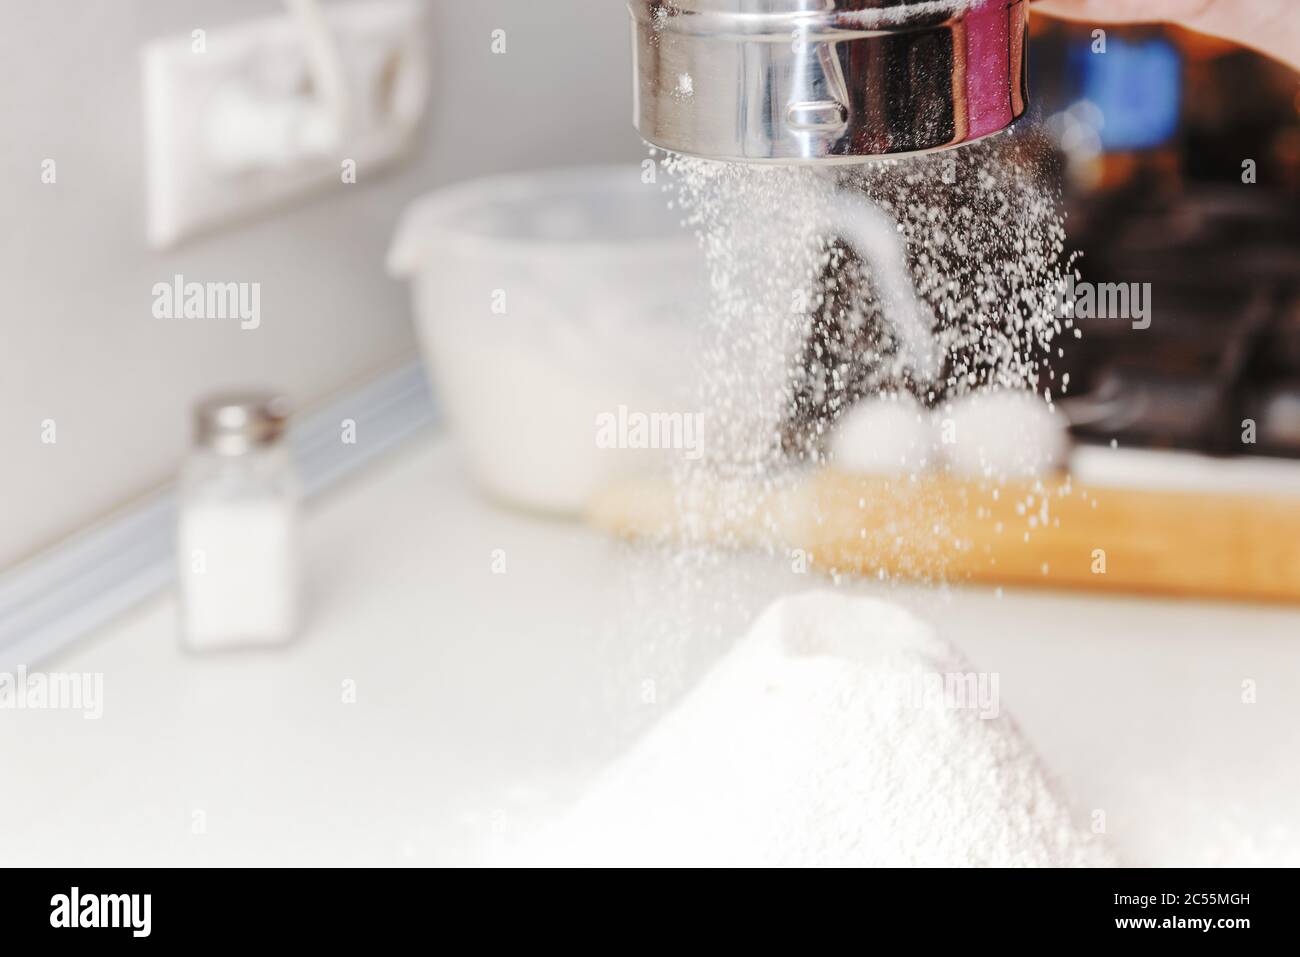 Les mains cuisent en gros plan. La main filtre la farine à travers le  tamis, la farine qui tombe est congelée. La farine se déplace sur la table.  Tamisez la farine. Baker